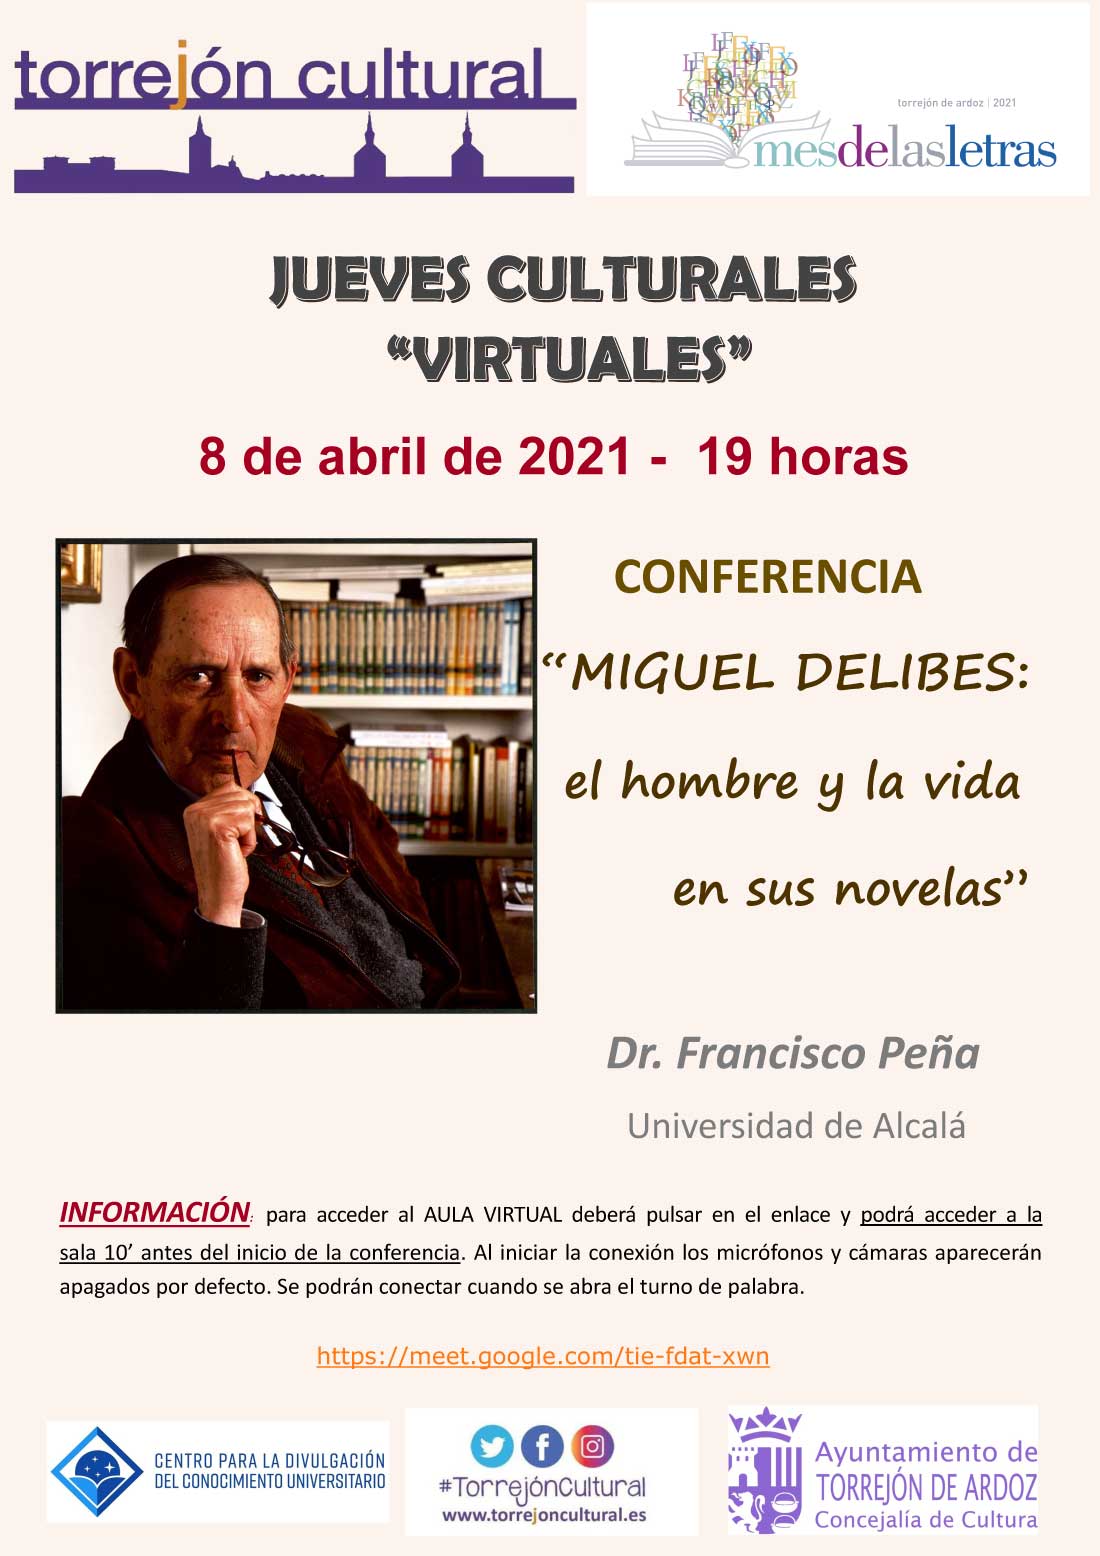 Jueves Culturales - Conferencia: Miguel Delibes, el hombre y la vida en sus novelas